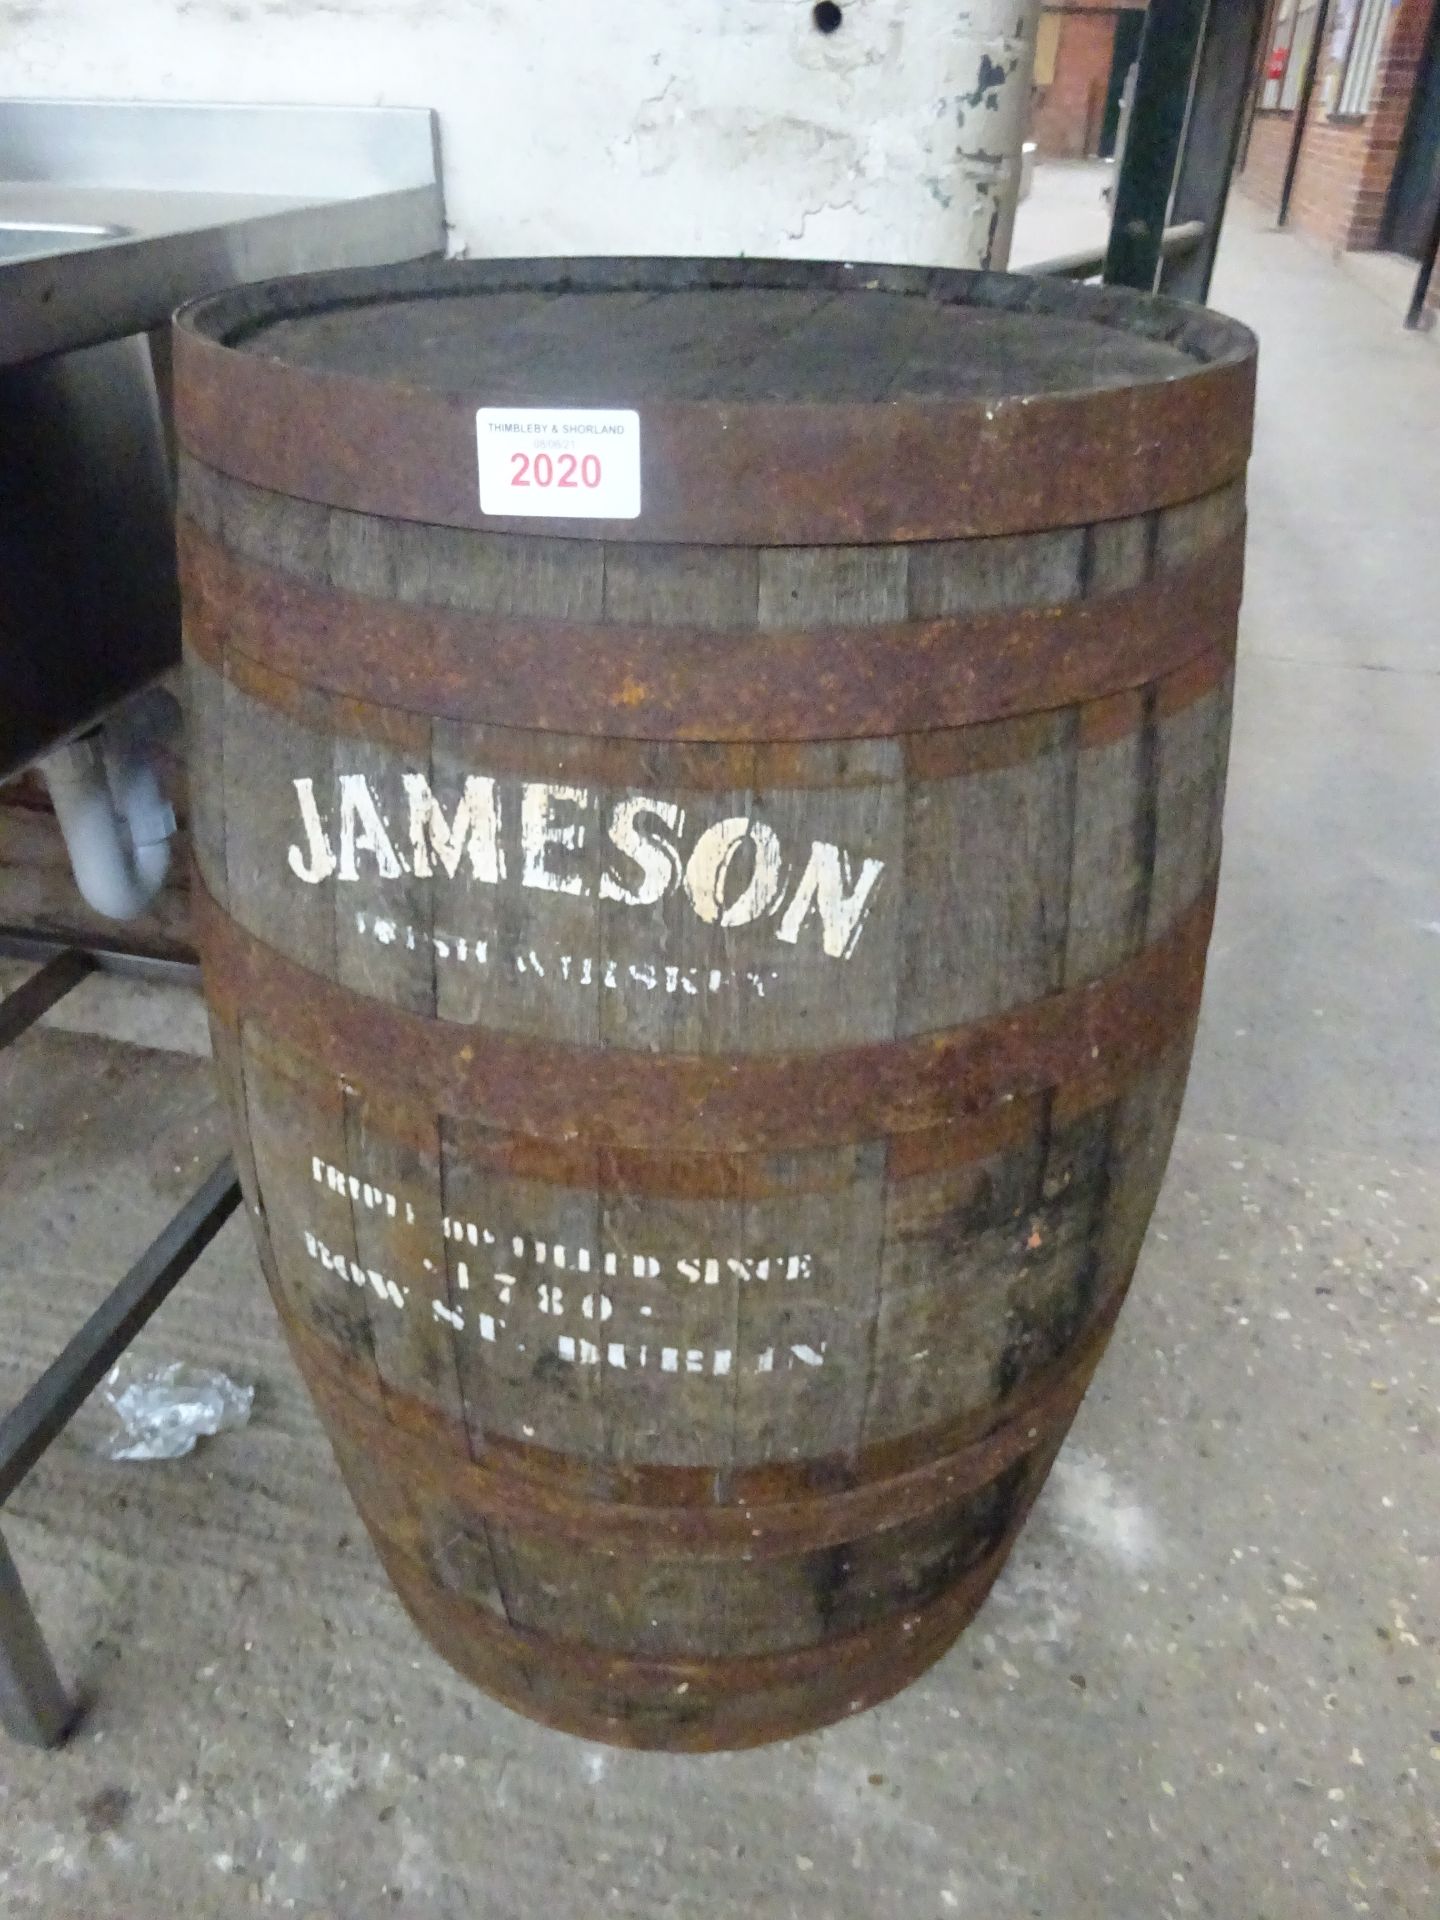 Jameson Irish whiskey barrel